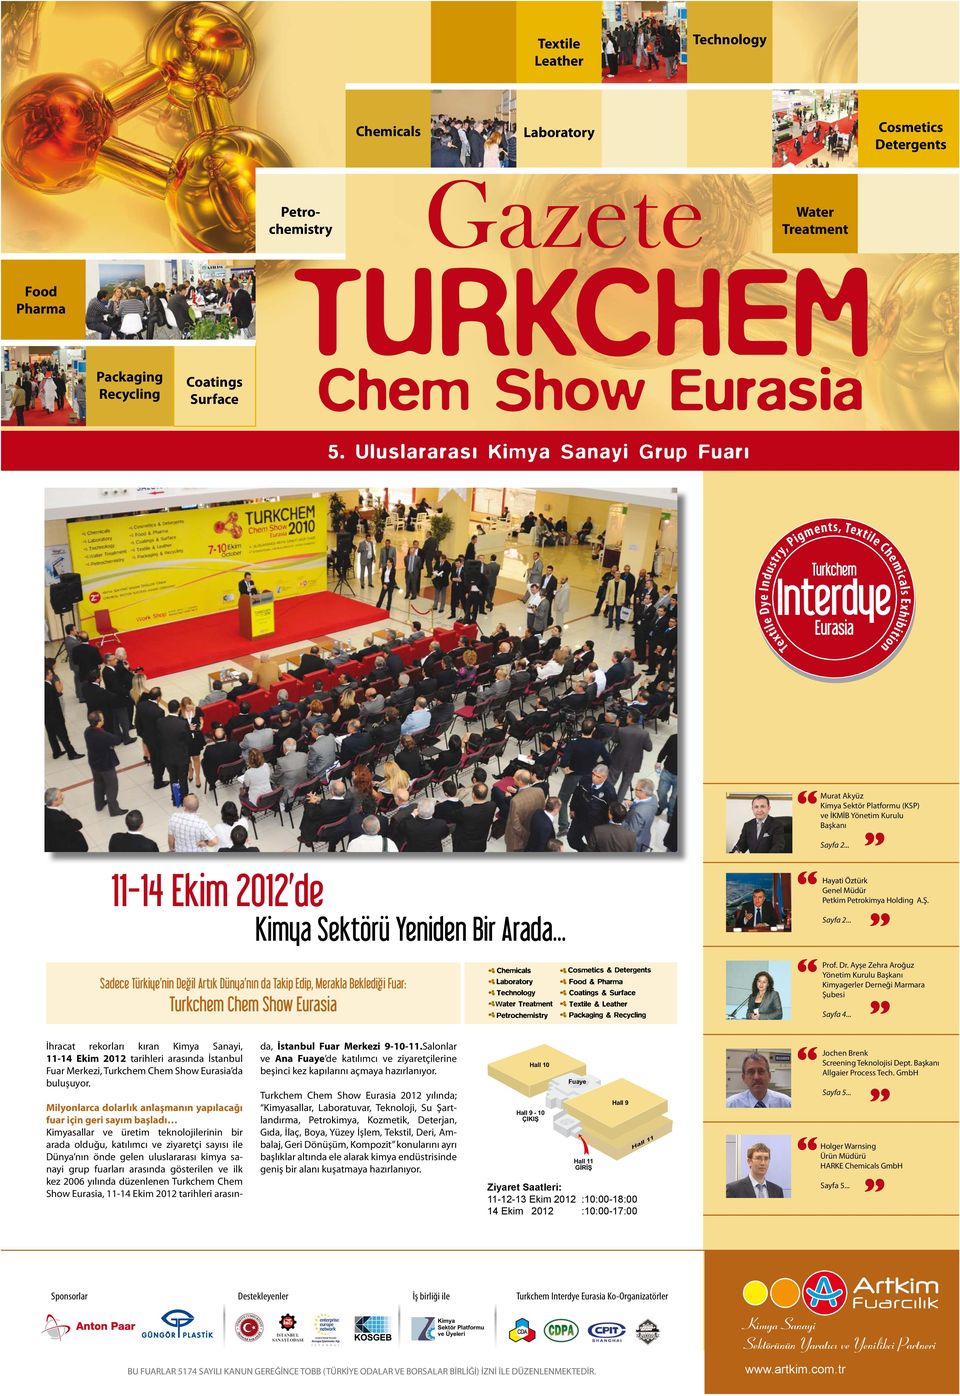 tarihleri arasında İstanbul Fuar Merkezi, Turkchem da buluşuyor. Kimya Sektörü Yeniden Bir Arada.